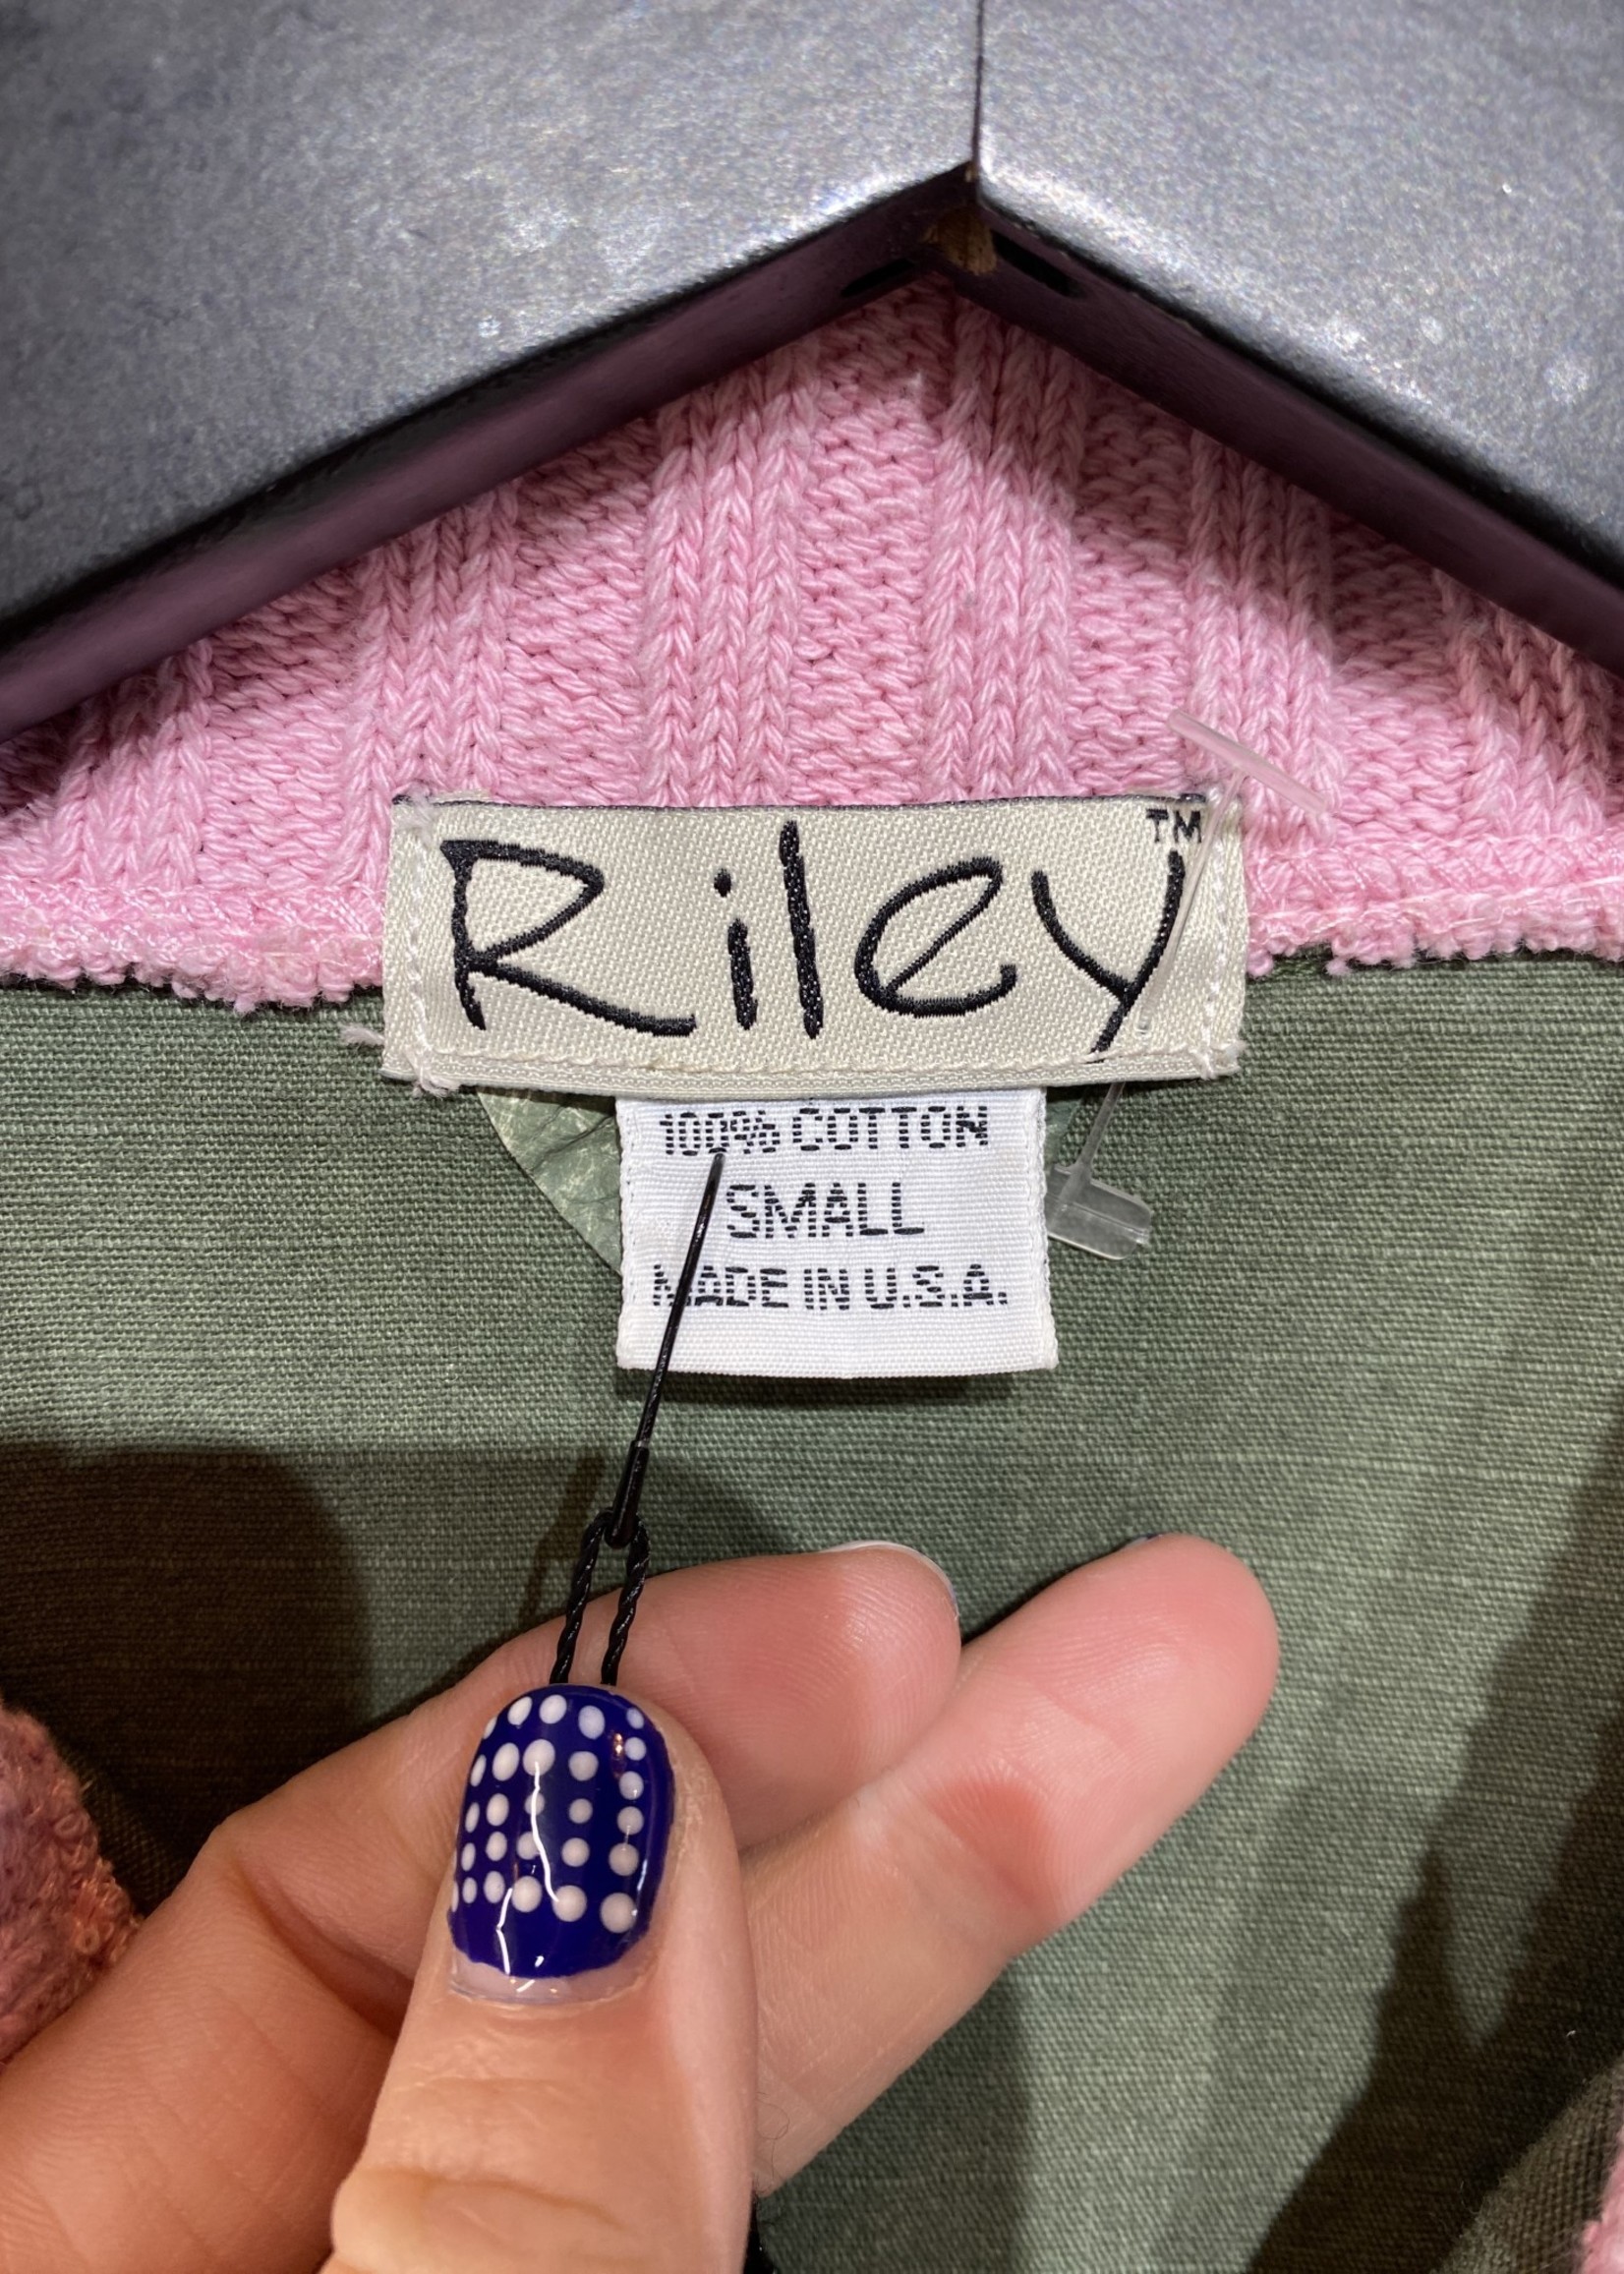 Riley Y2K Green Pink Collar Jacket S